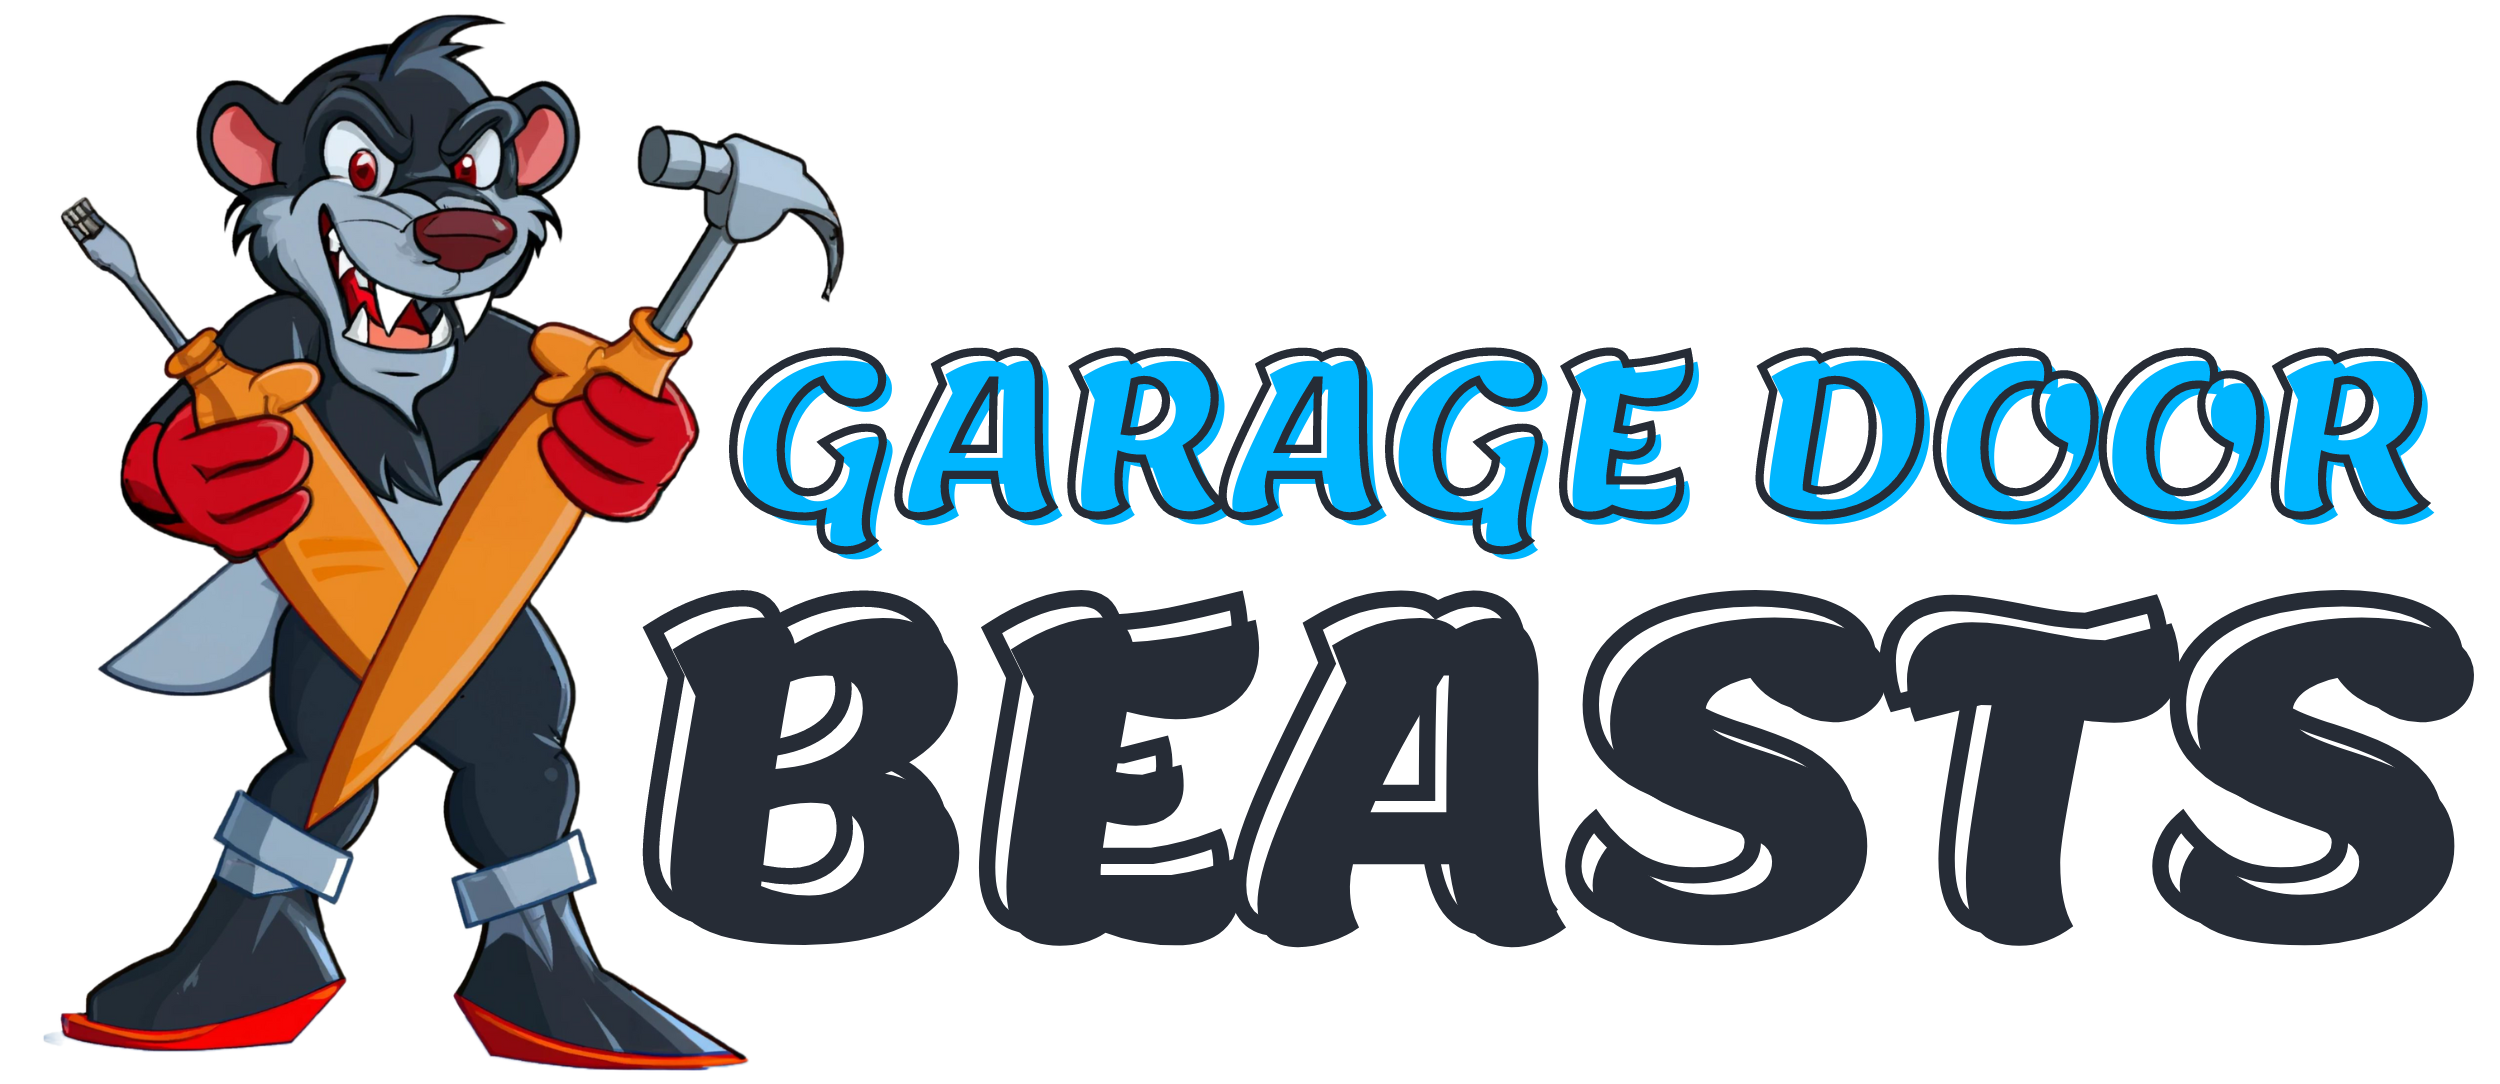 Garage Door Beasts